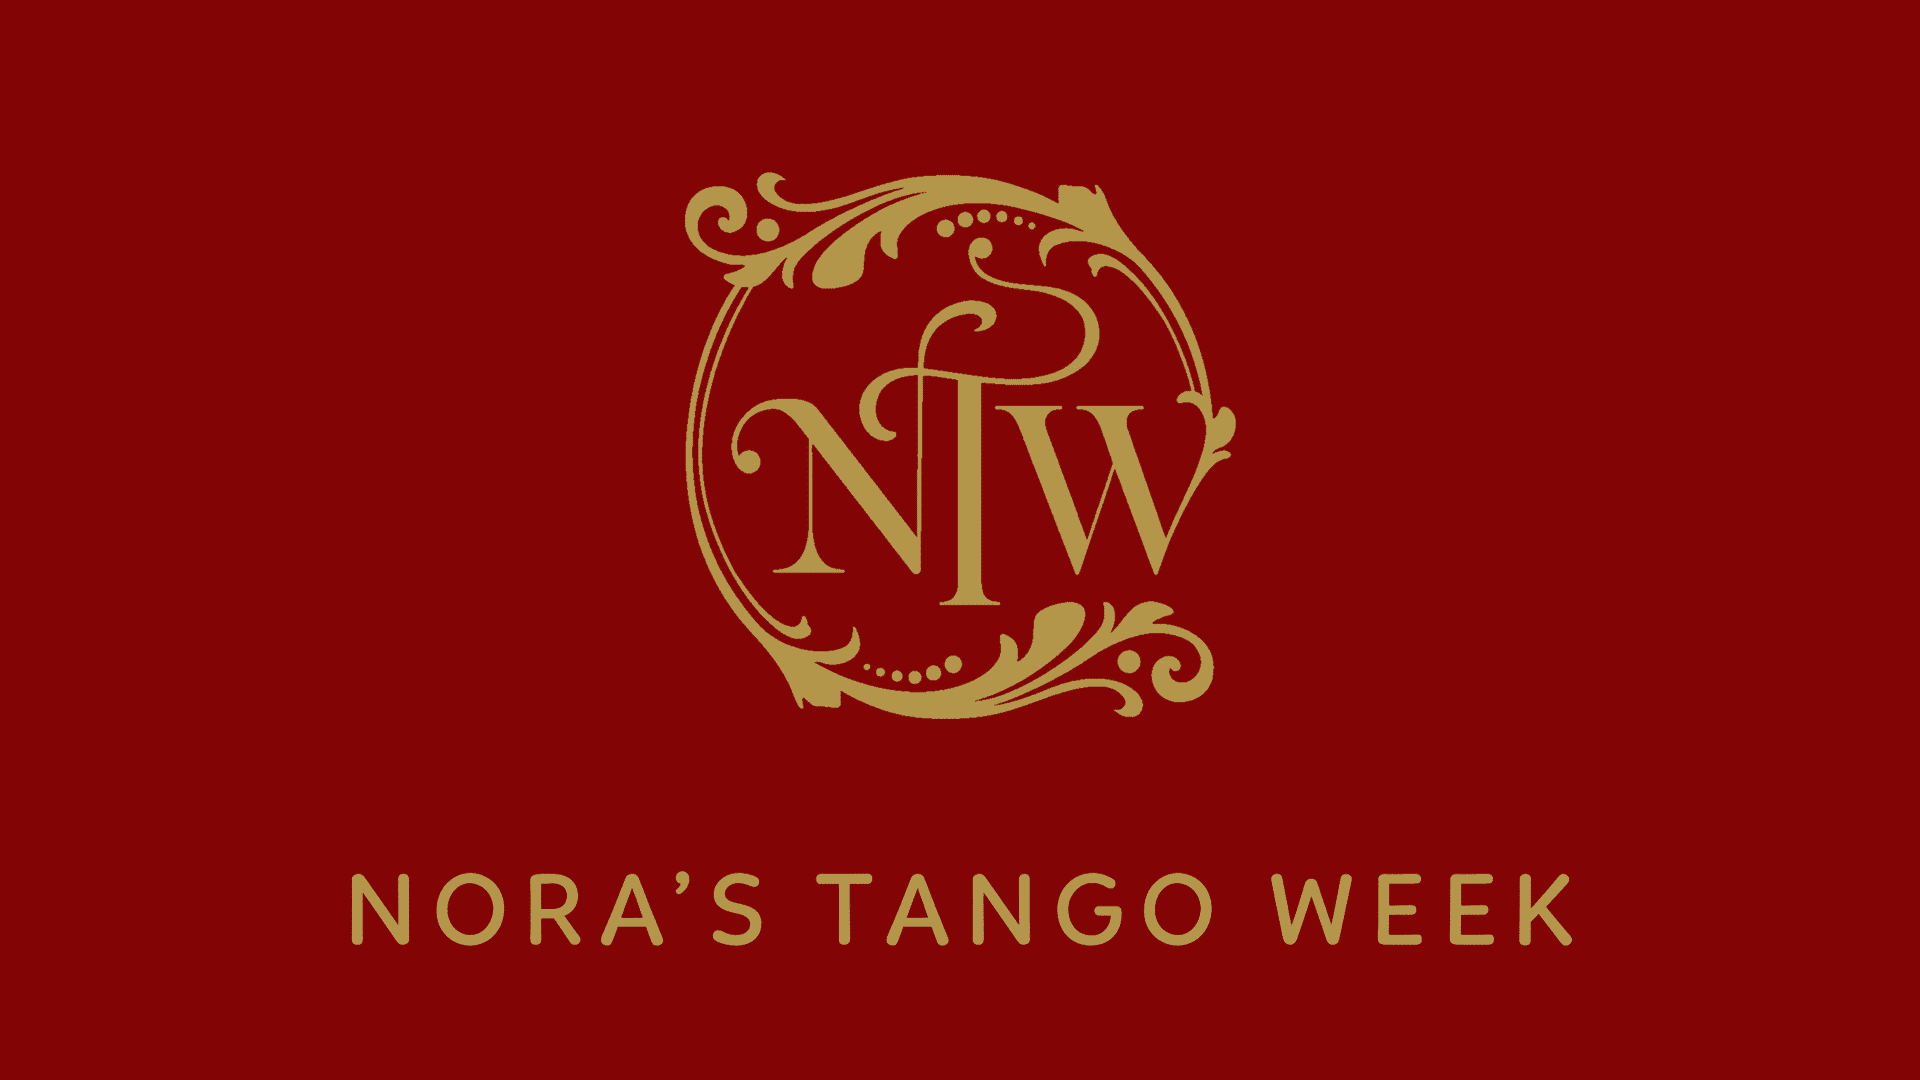 Nora’s Tango Week